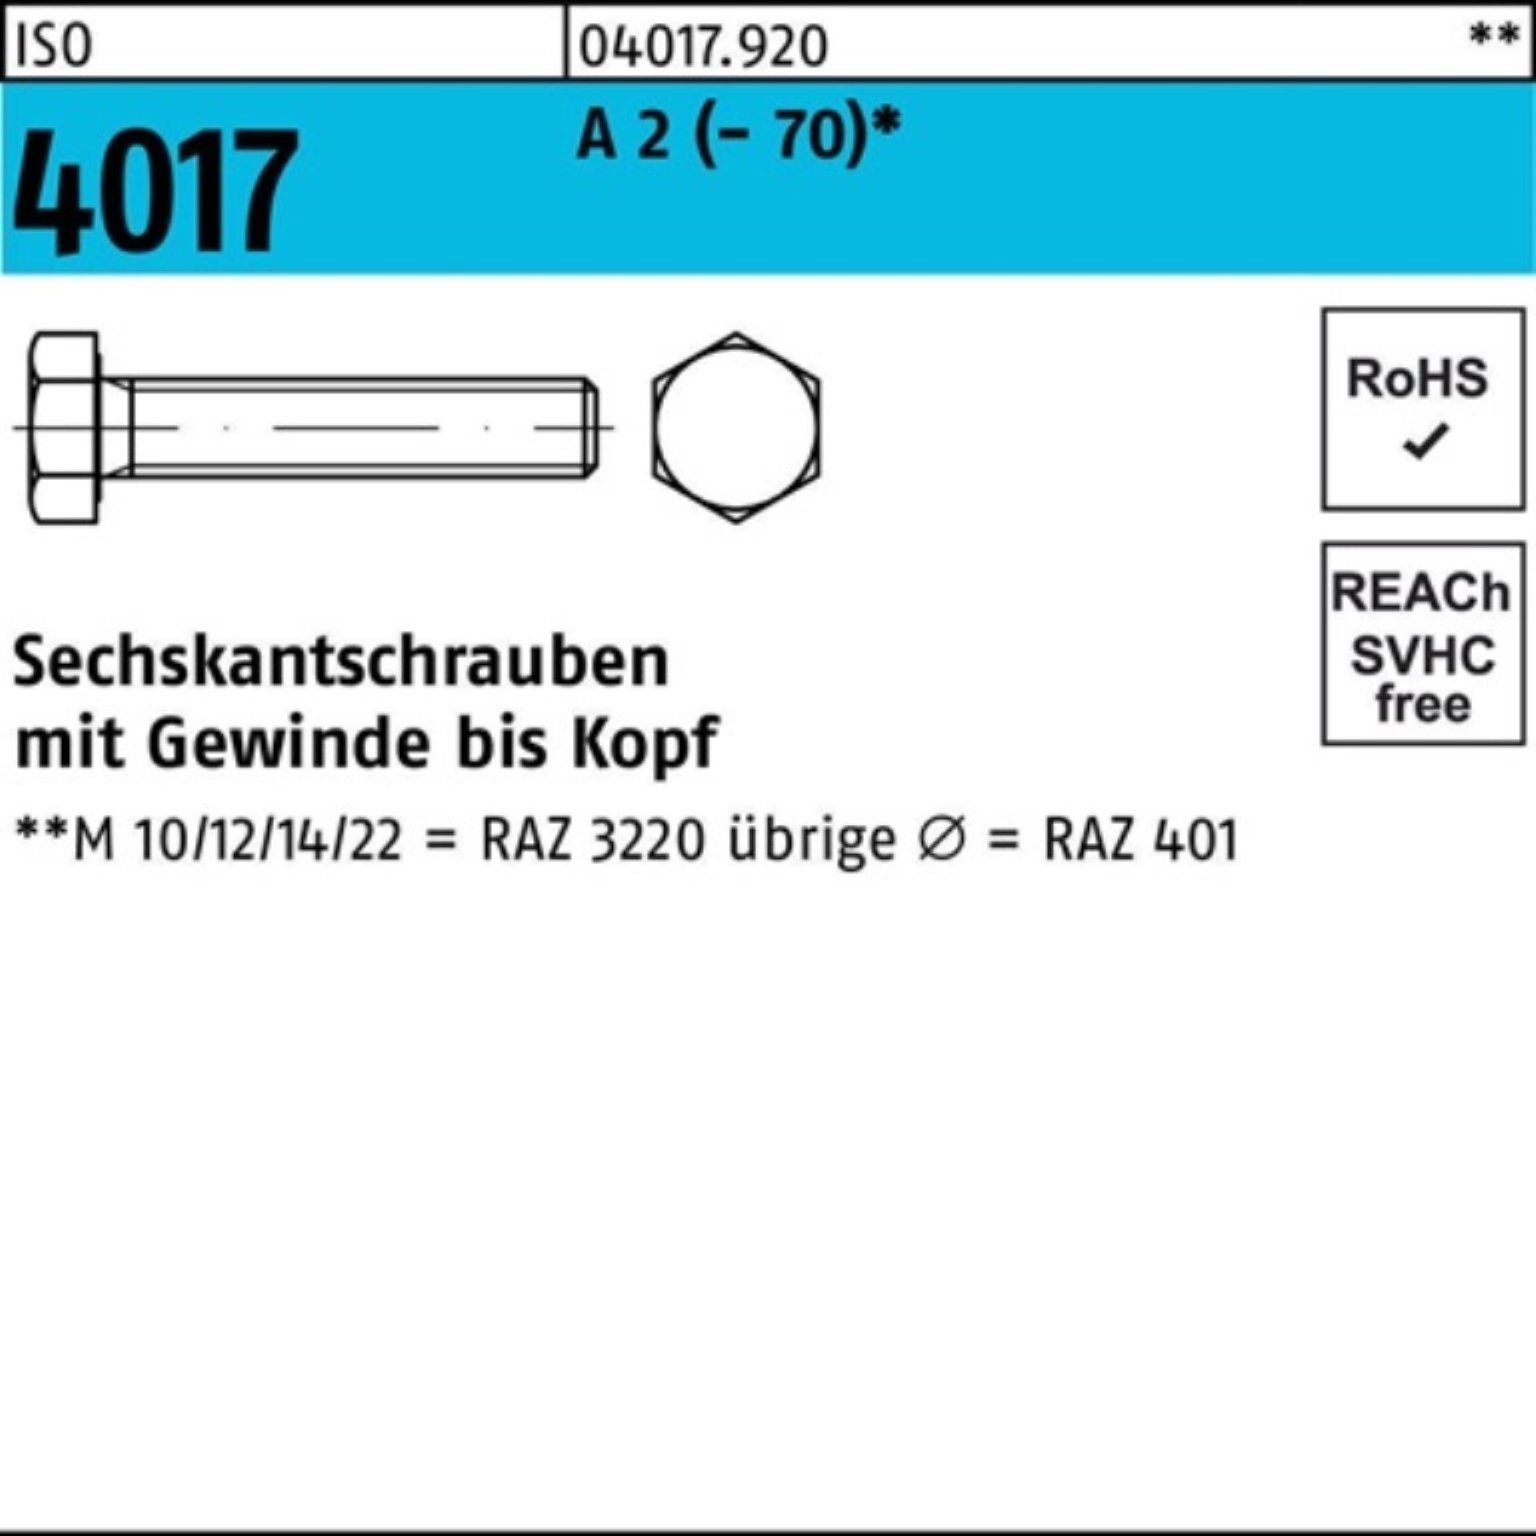 Bufab Sechskantschraube 100er Pack Sechskantschraube ISO 4017 VG M3x 14 A 2 (70) 100 Stück